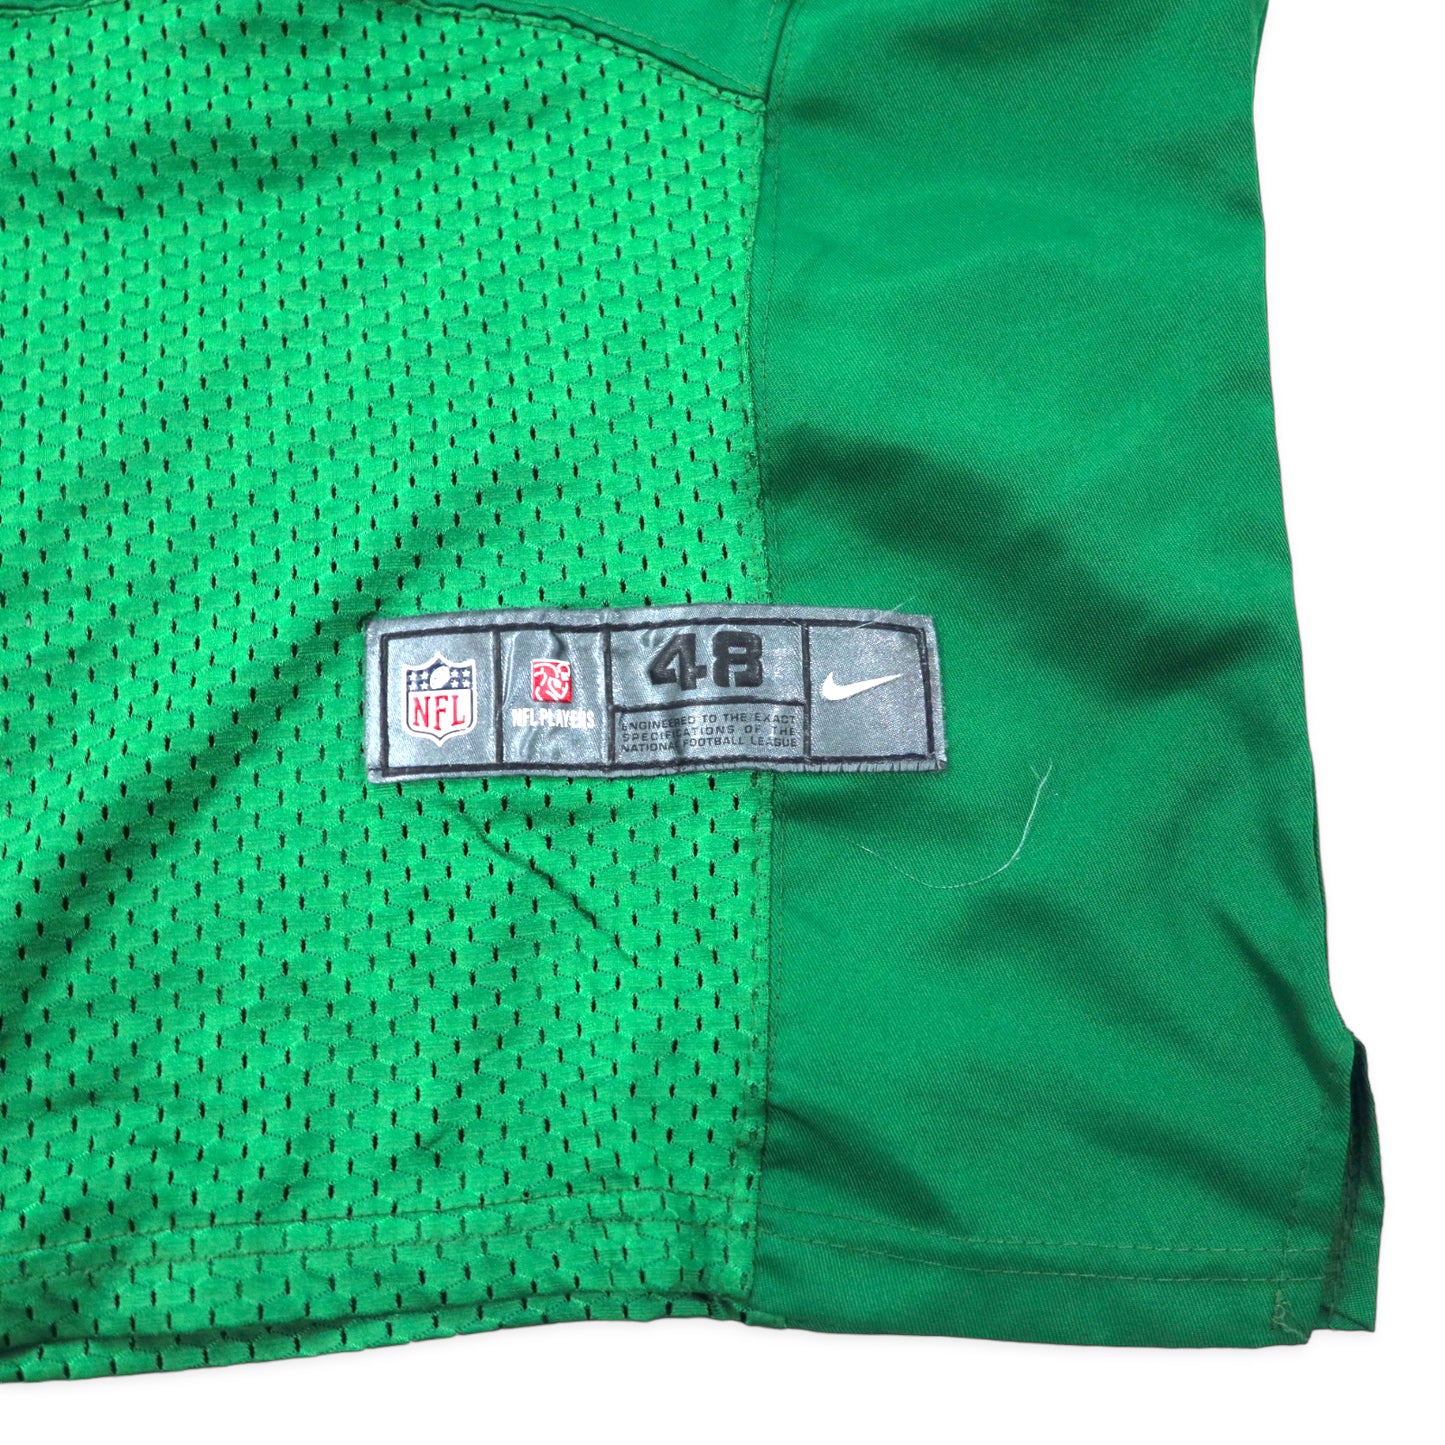 NIKE NFL ゲームシャツ 48 グリーン ポリエステル メッシュ NY JETS ナンバリング WILLIAMS ビッグサイズ